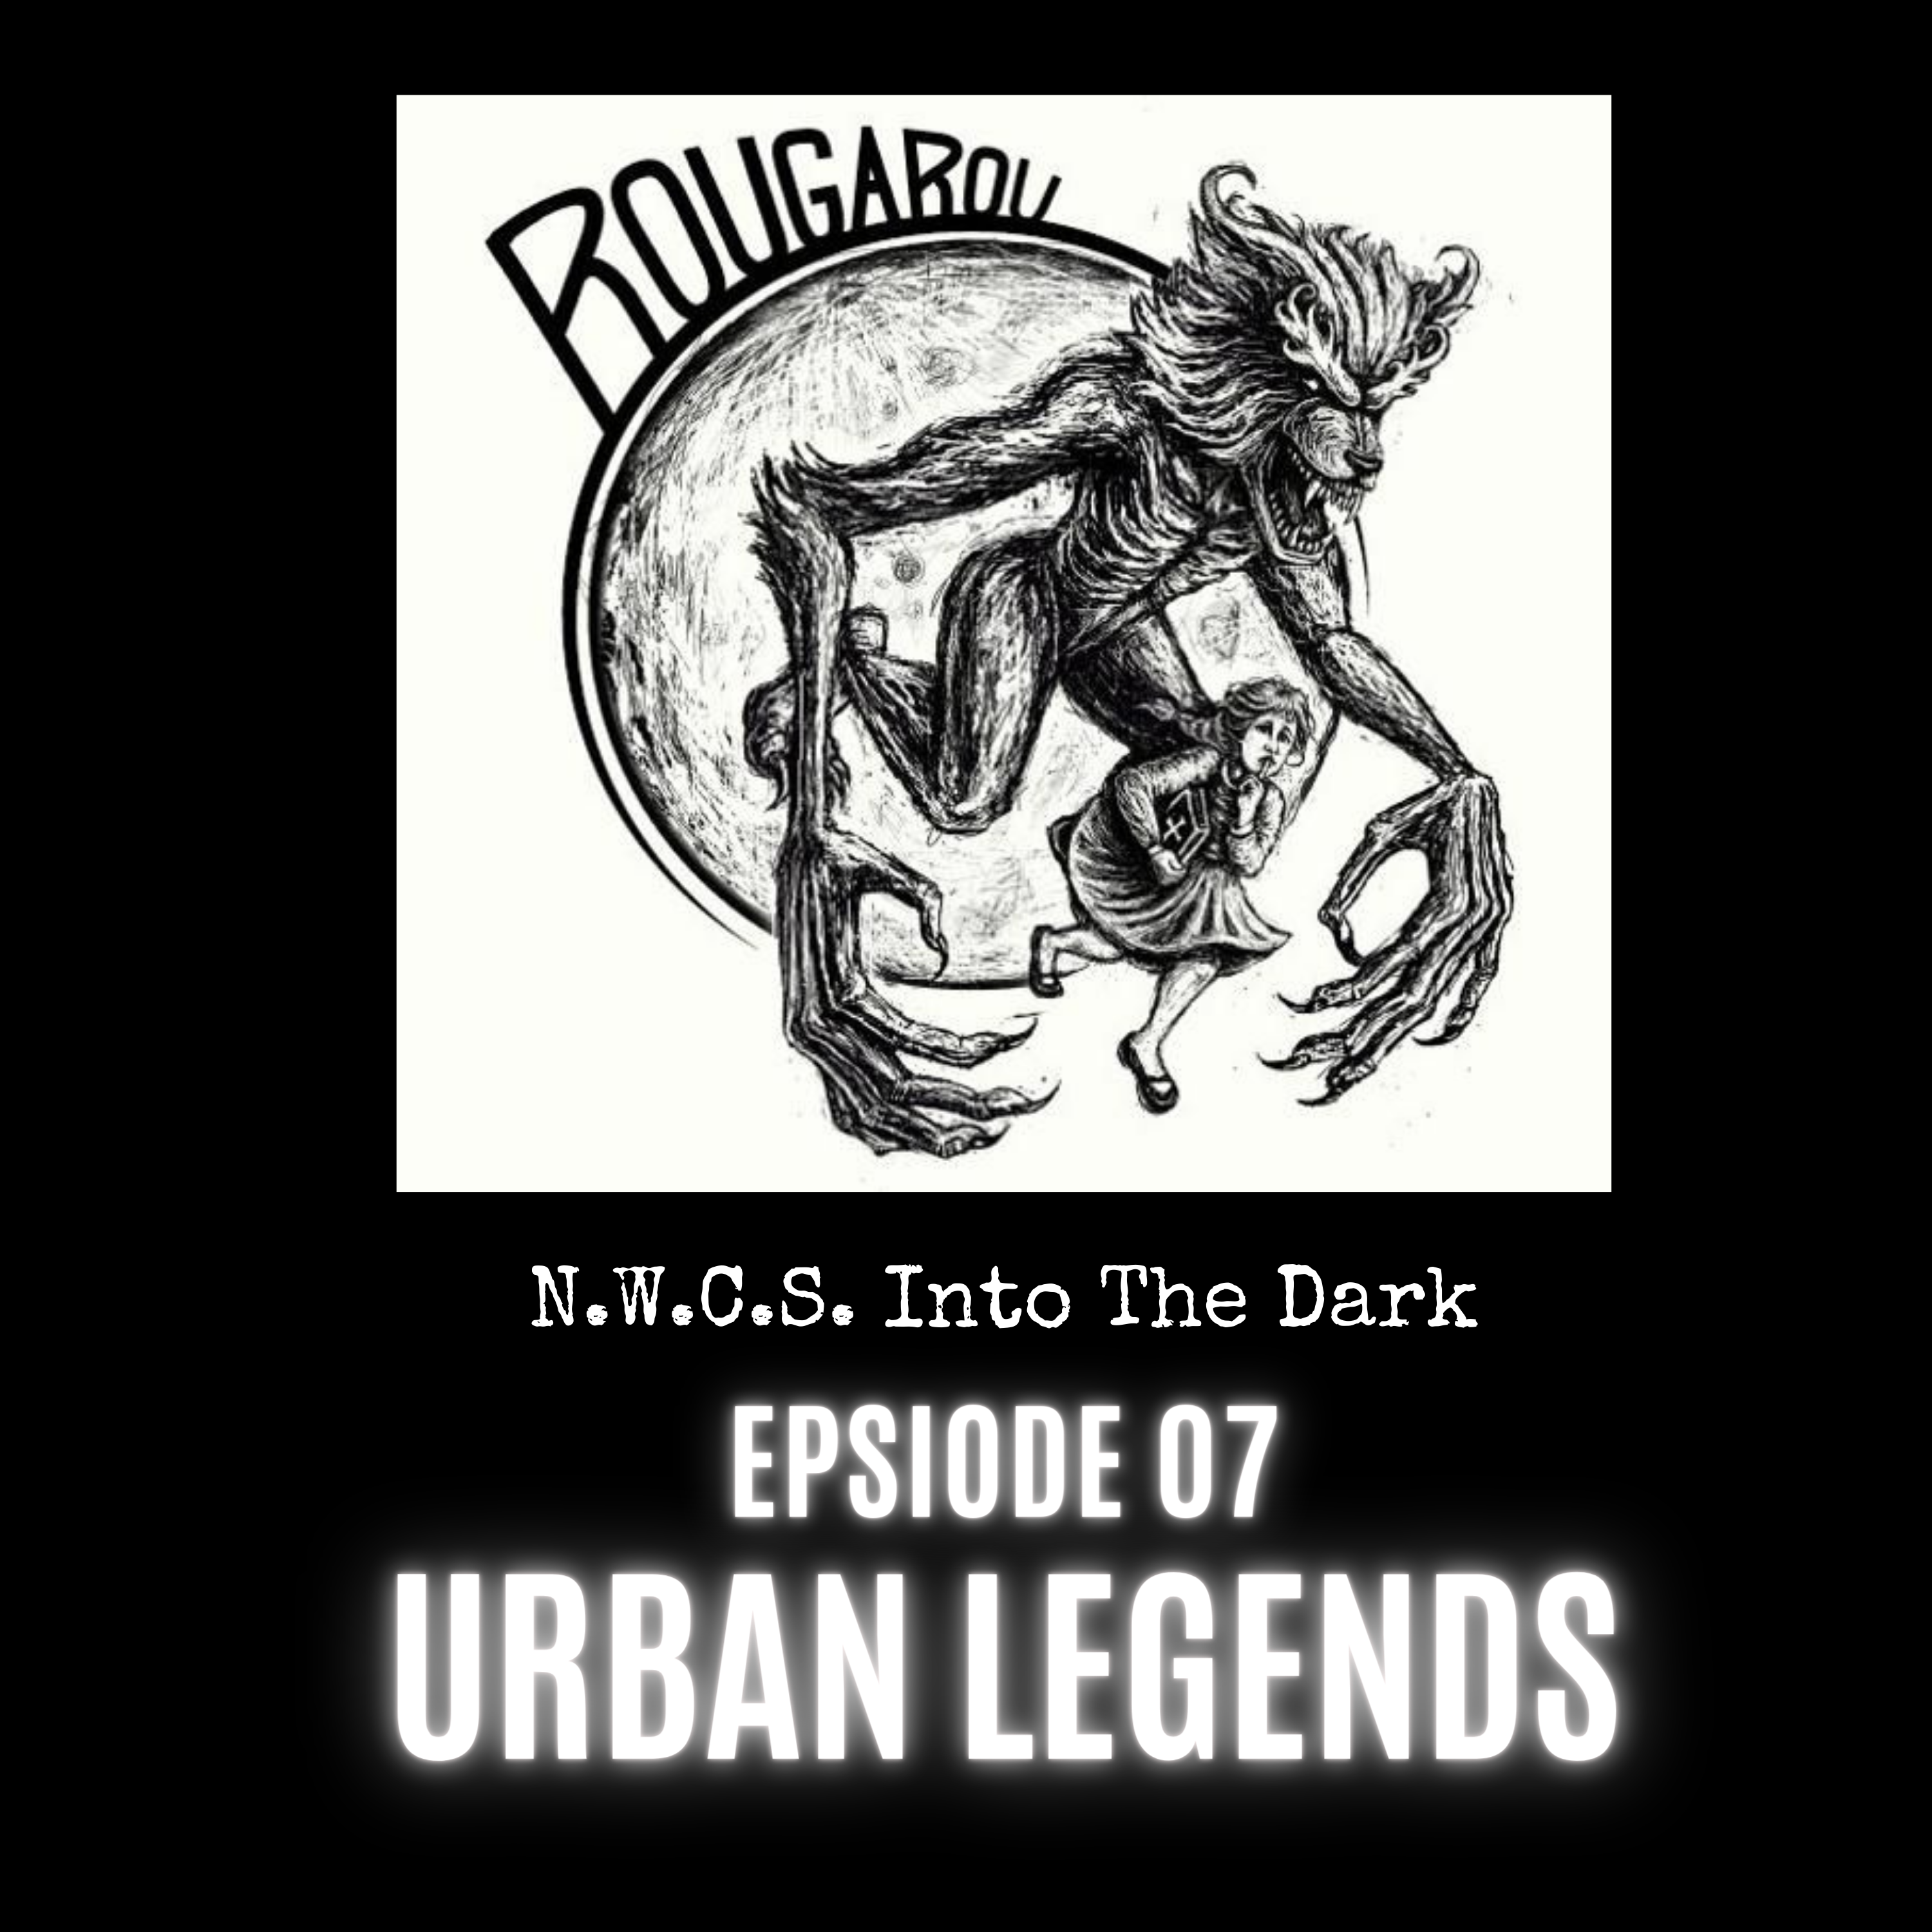 N.W.C.S. - Into The Dark Episode 07 Urban Legends